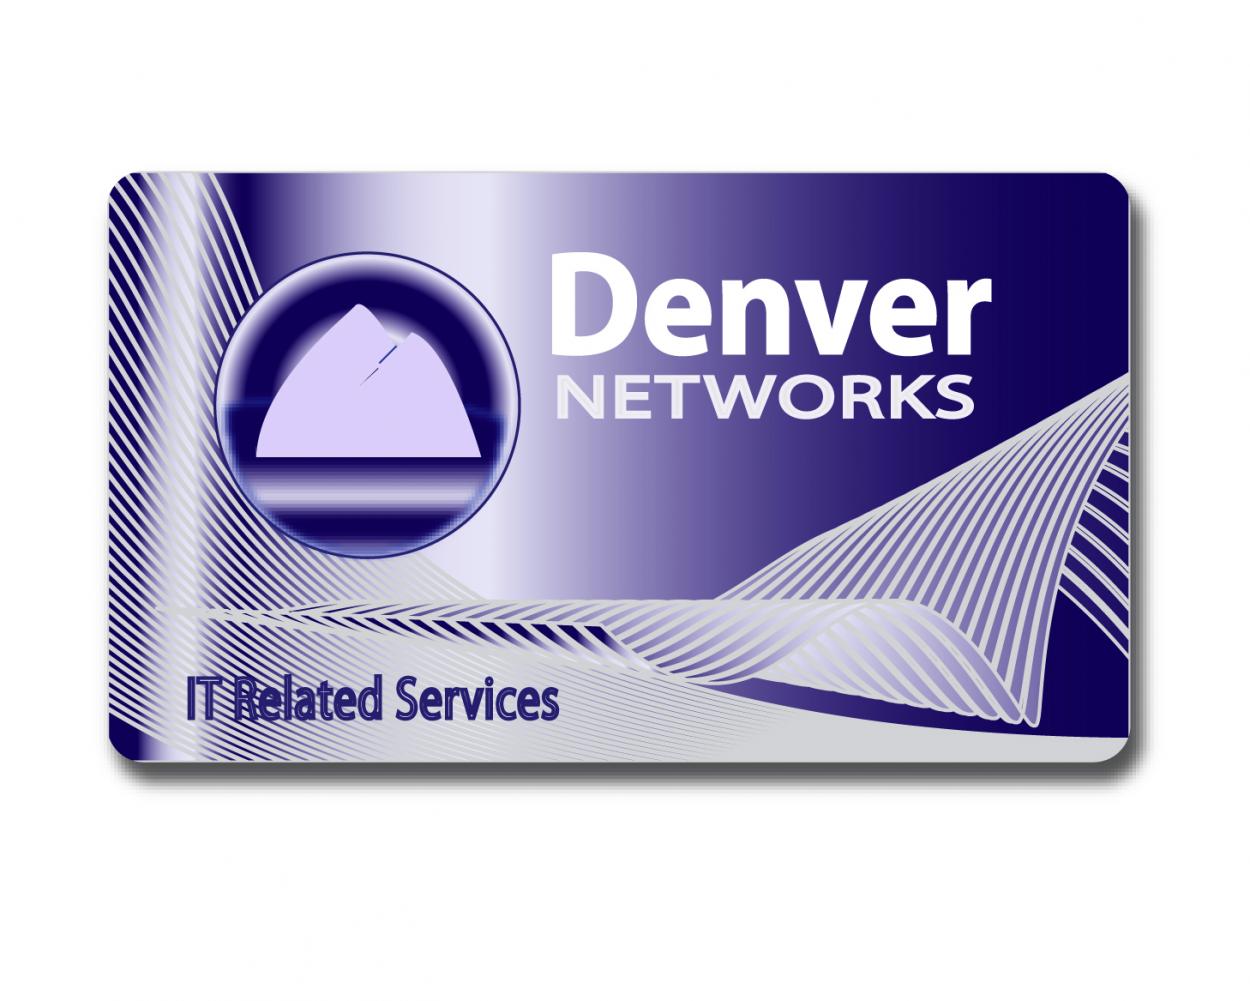 Business Card & Stationery Design entry 91445 submitted by harbor to the Business Card & Stationery Design for Denver Networks run by denvernetworks